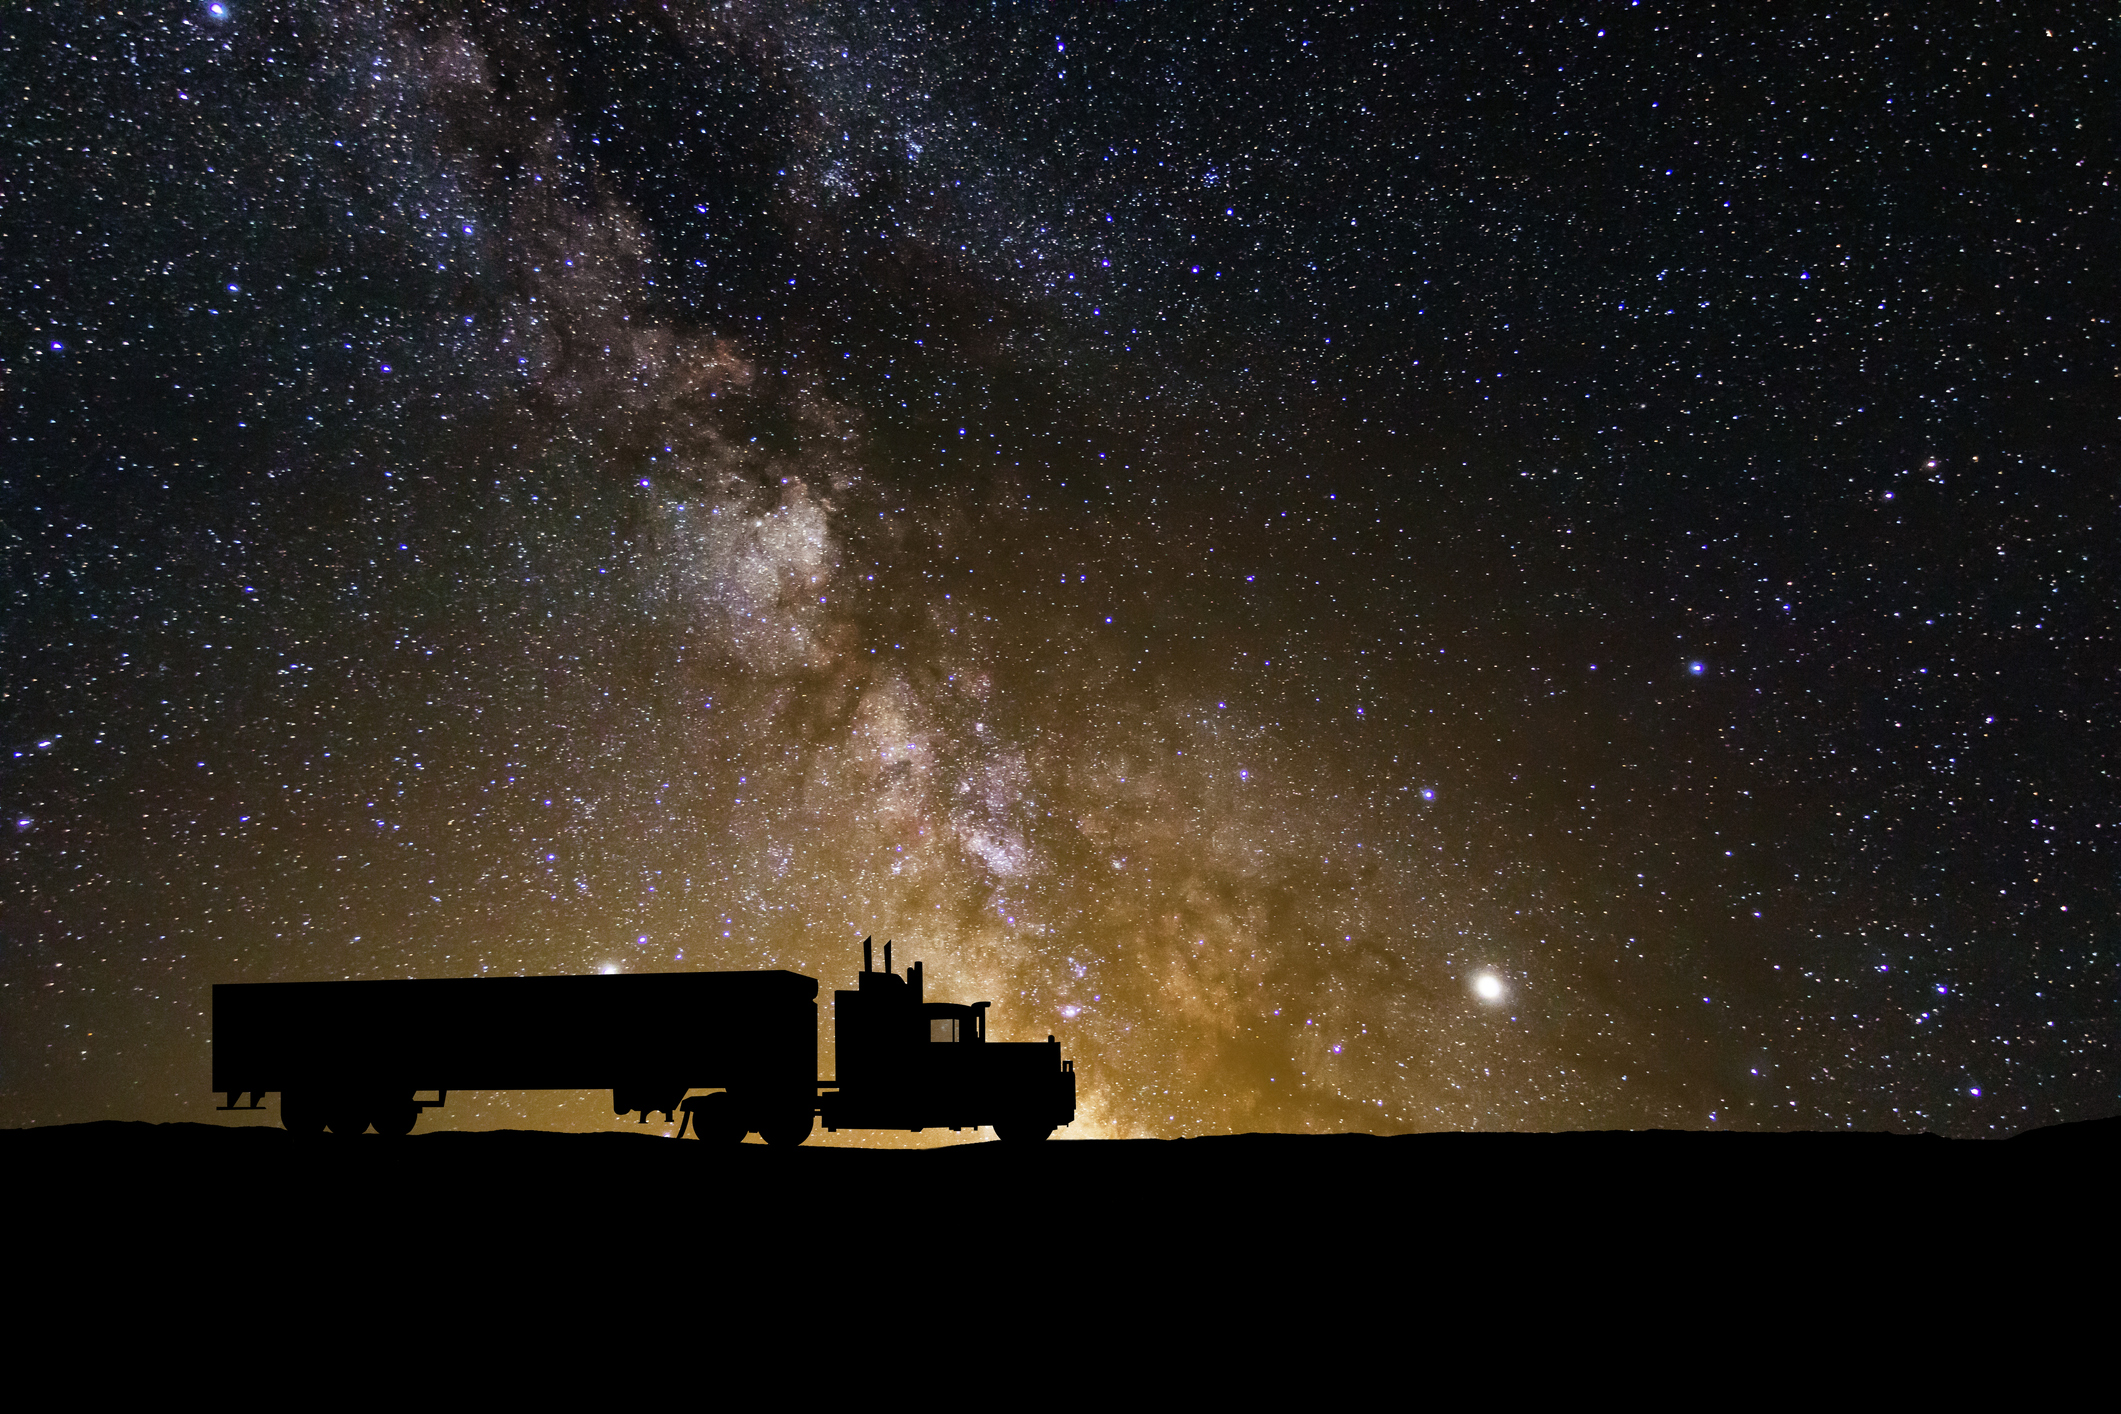 「星間流星」からの振動は、実際には地元のトラックからのものです。 あるいは著名人の世界からの検証